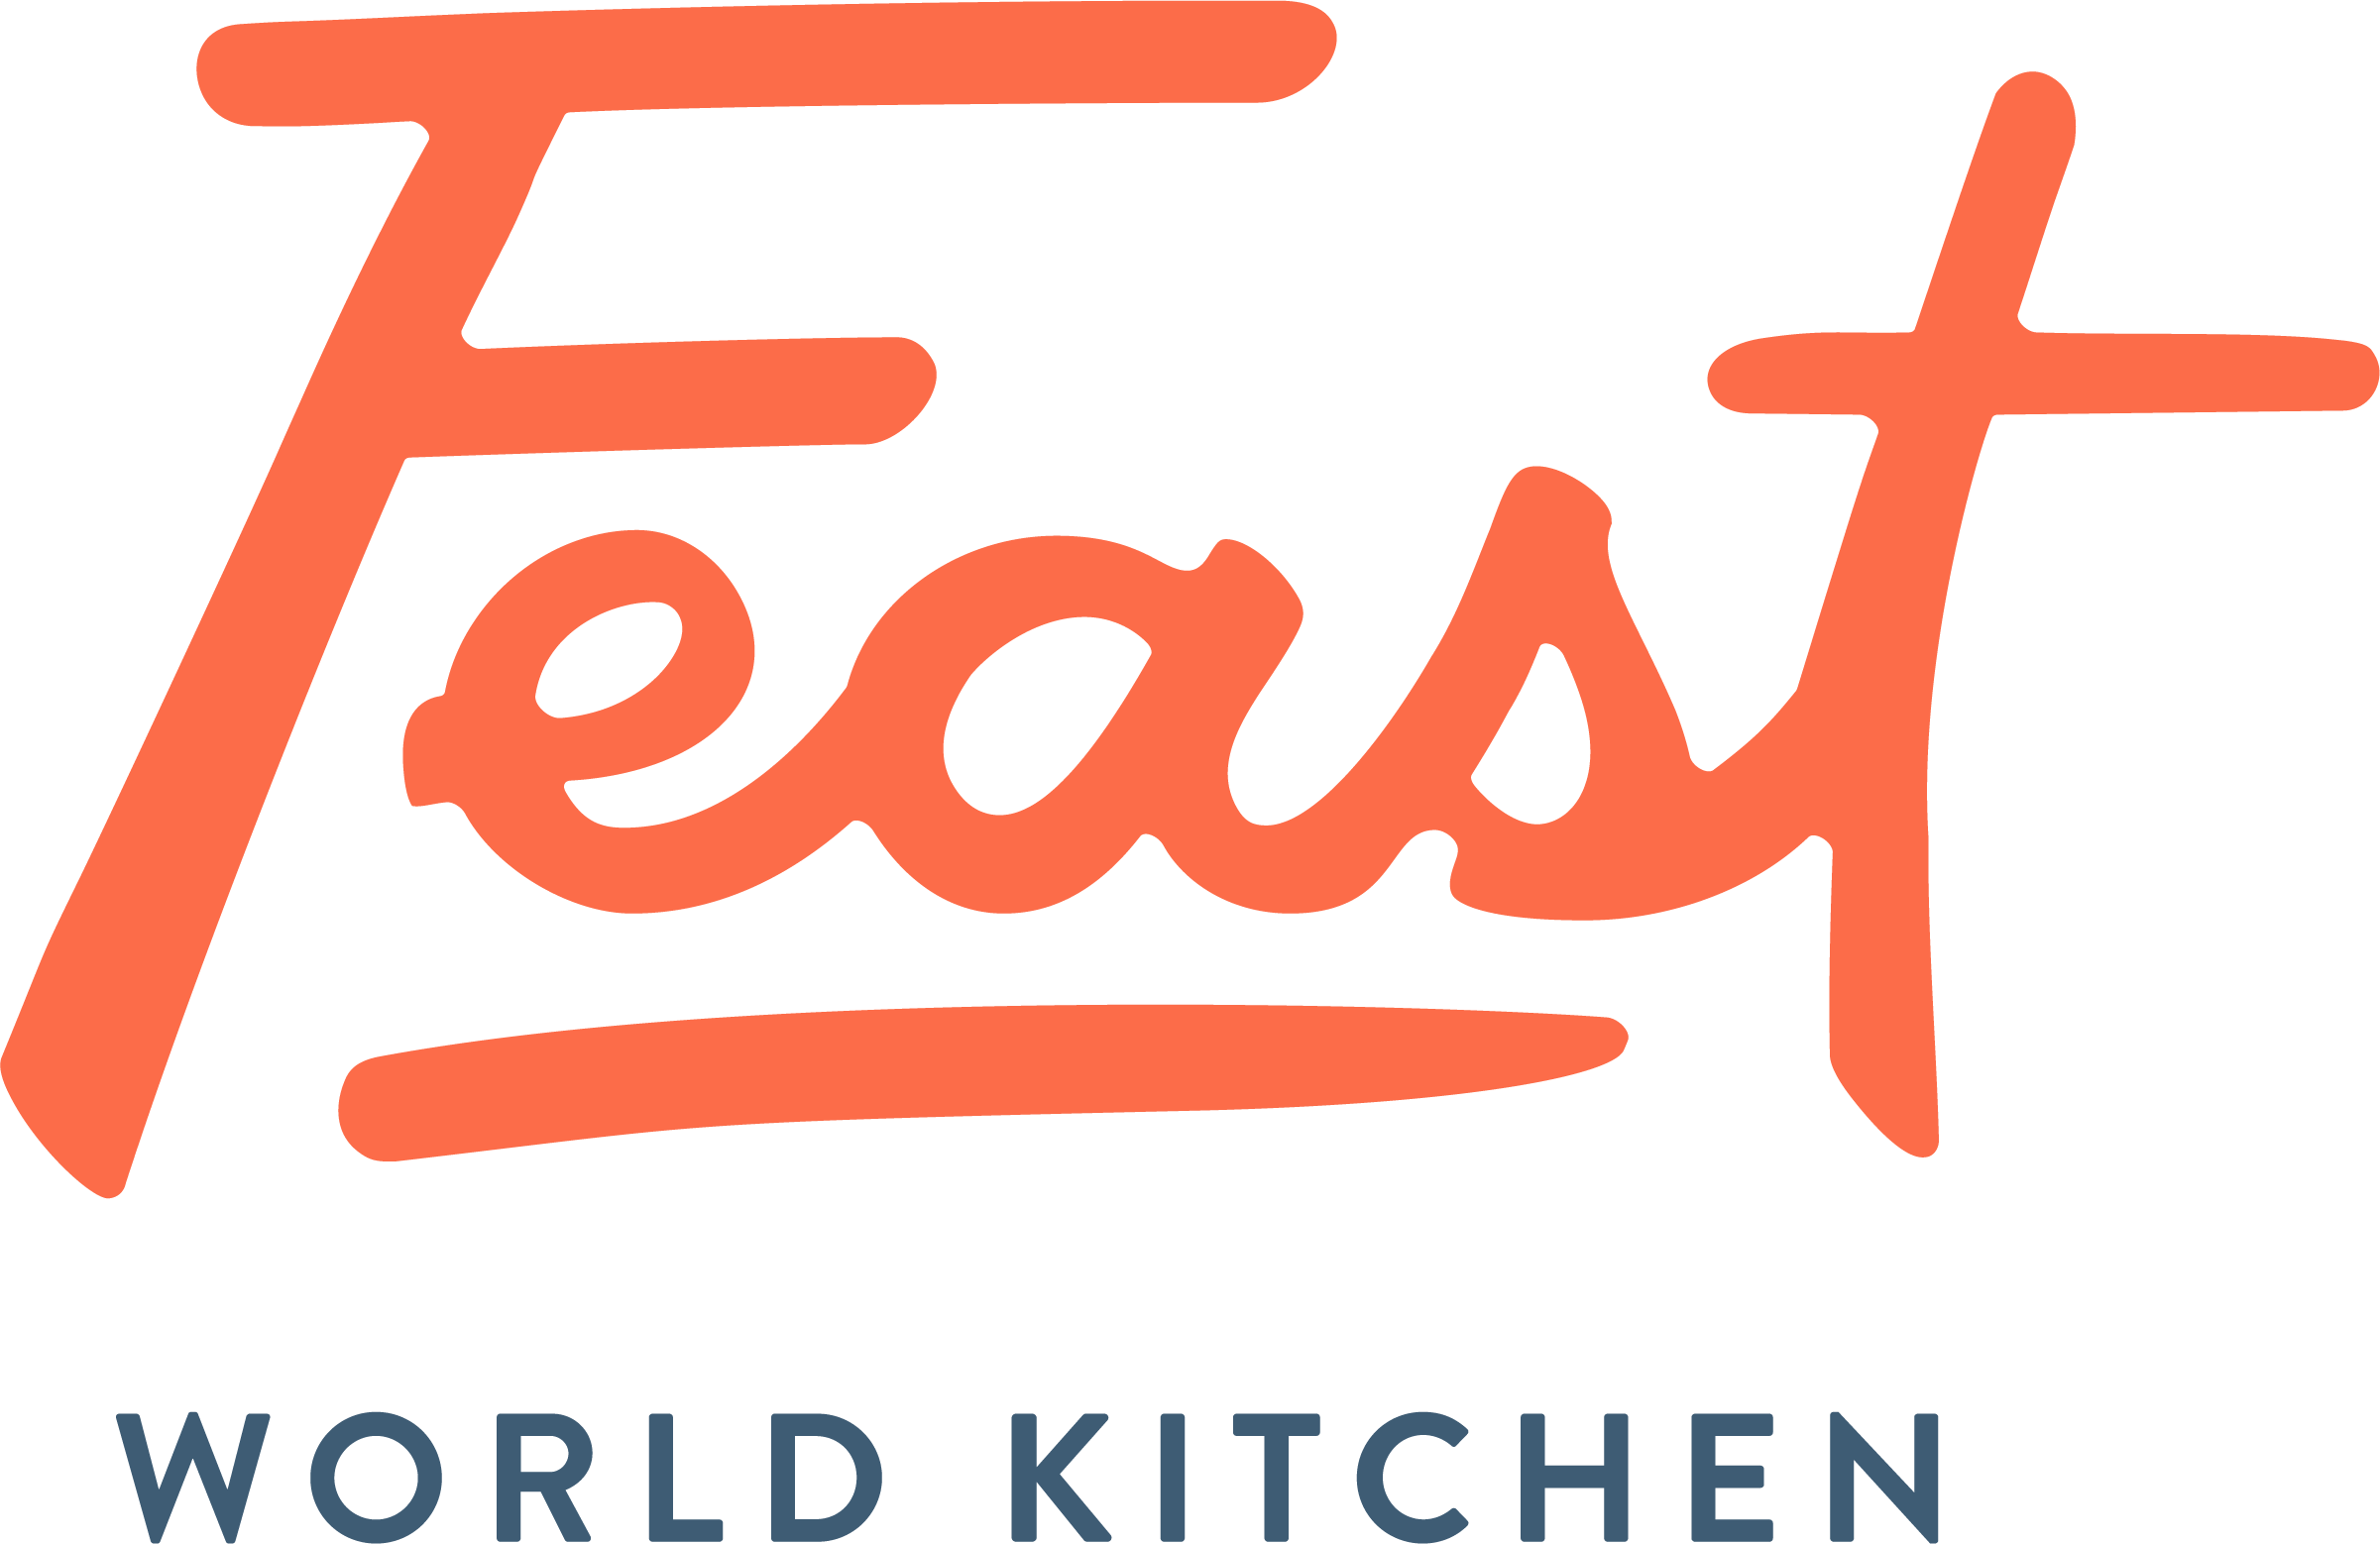 FEAST | World Kitchen